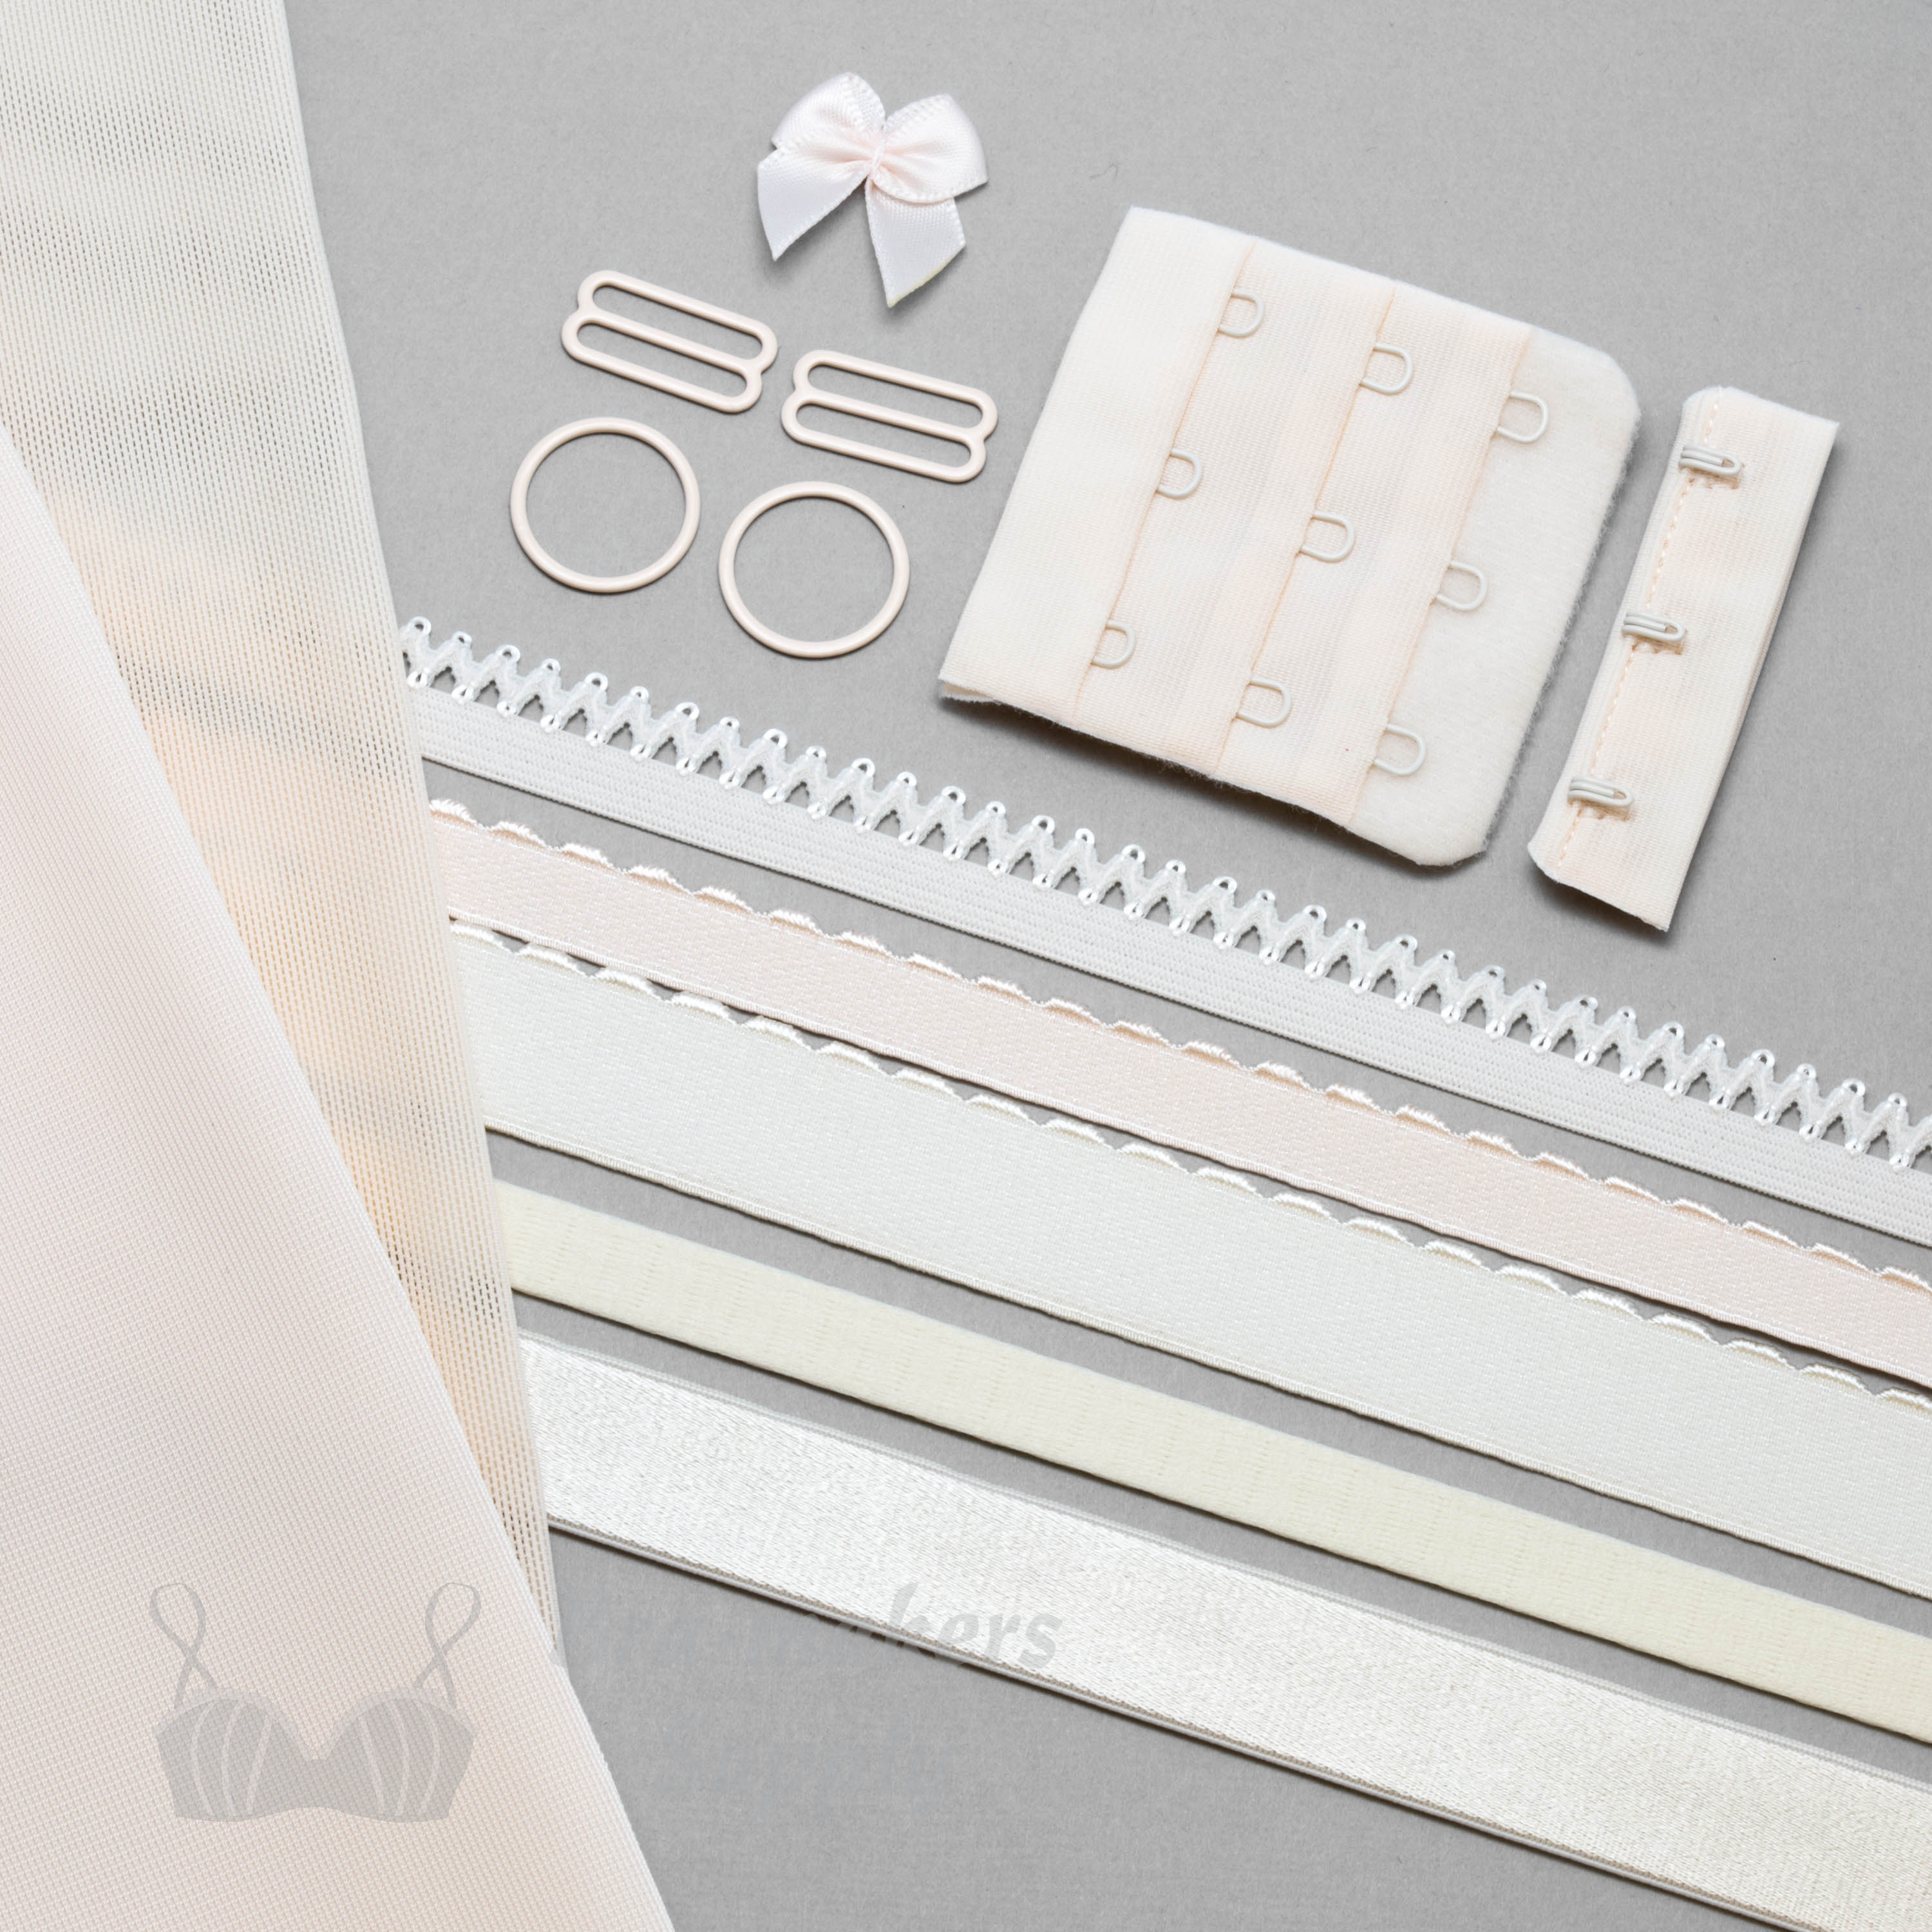 Bra Making Kit STARTER KIT Lingerie Sewing Kit for Beginners 